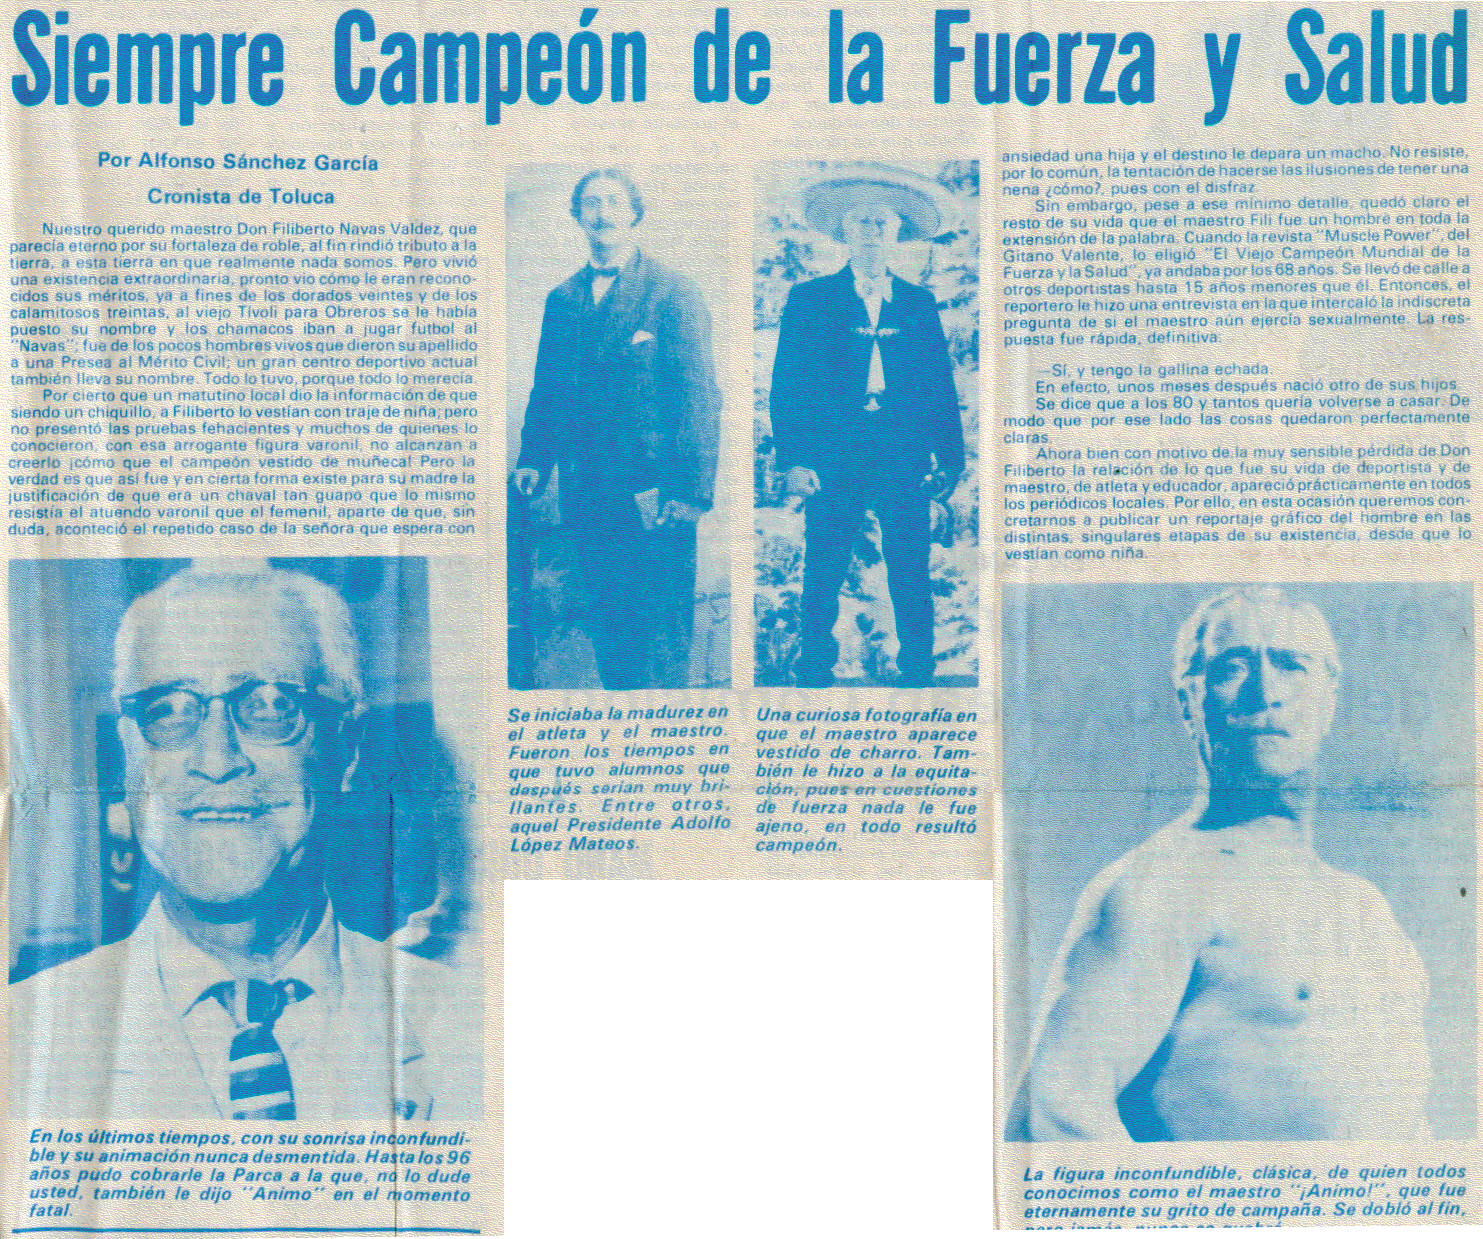 Siempre Campeon de la Fuerza y Salud - El Noticiero newspaper article about Filiberto Navas de Valdes